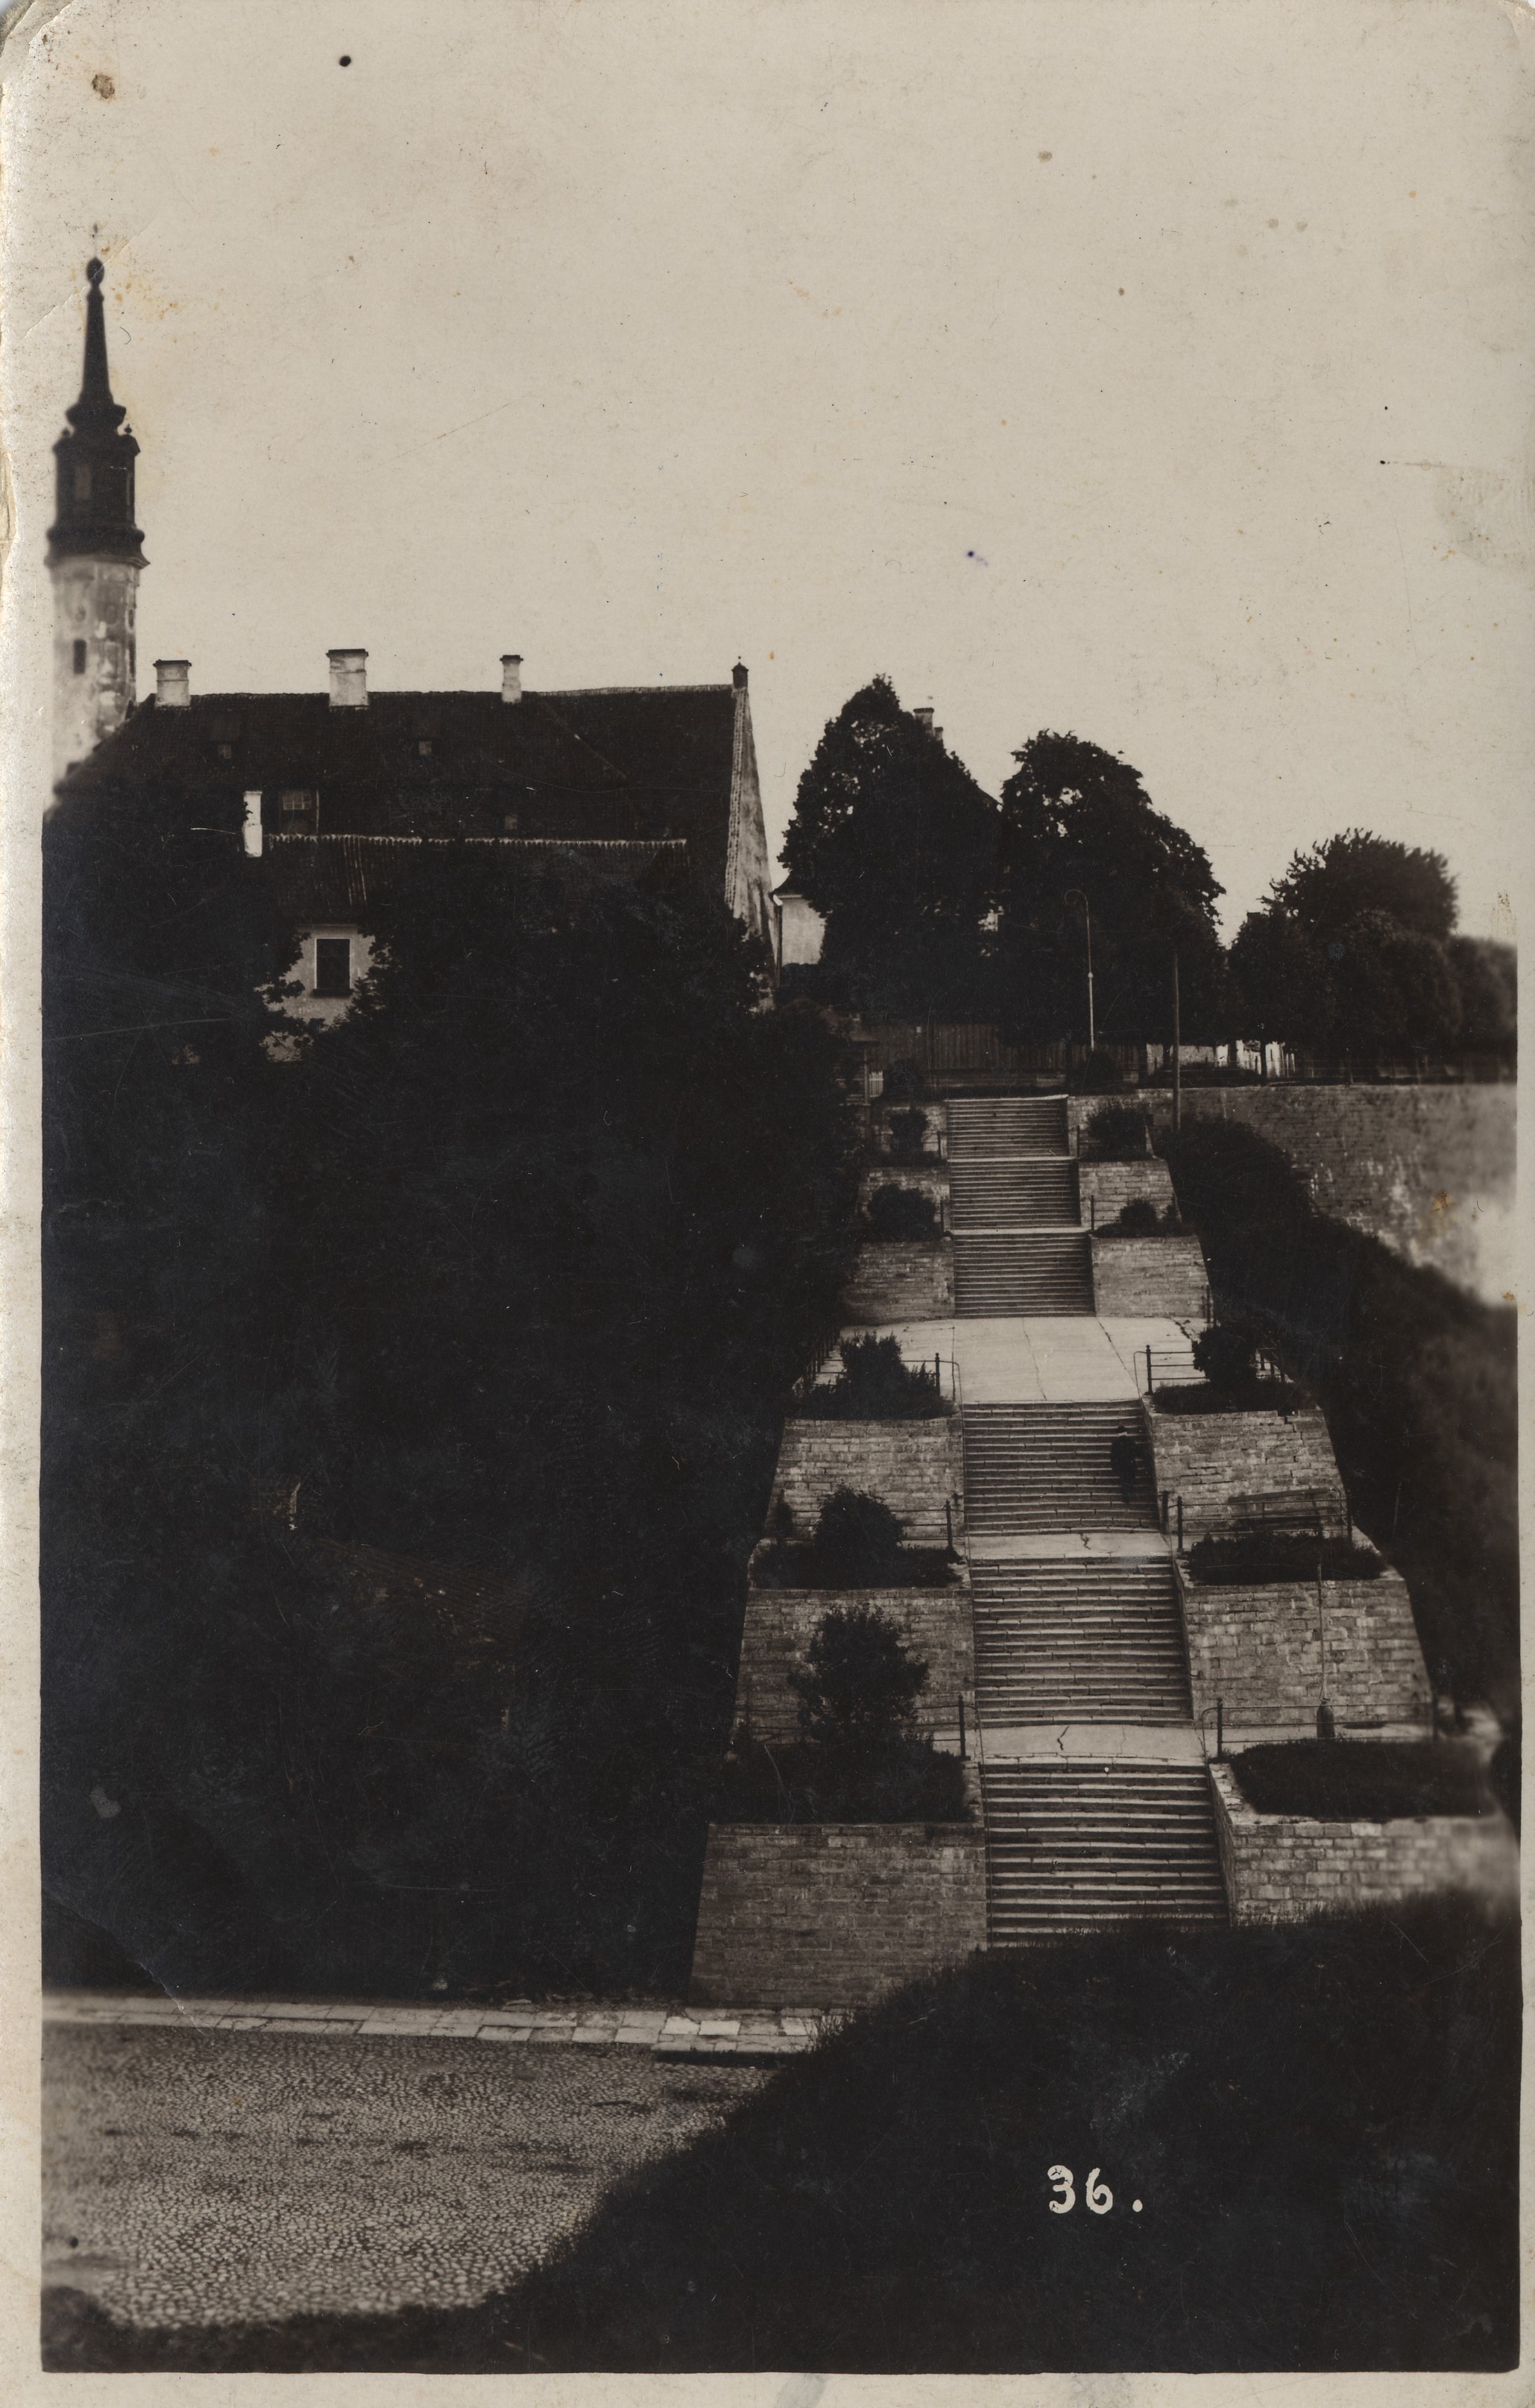 Estonia : Narva stone staircase = the stone staircase